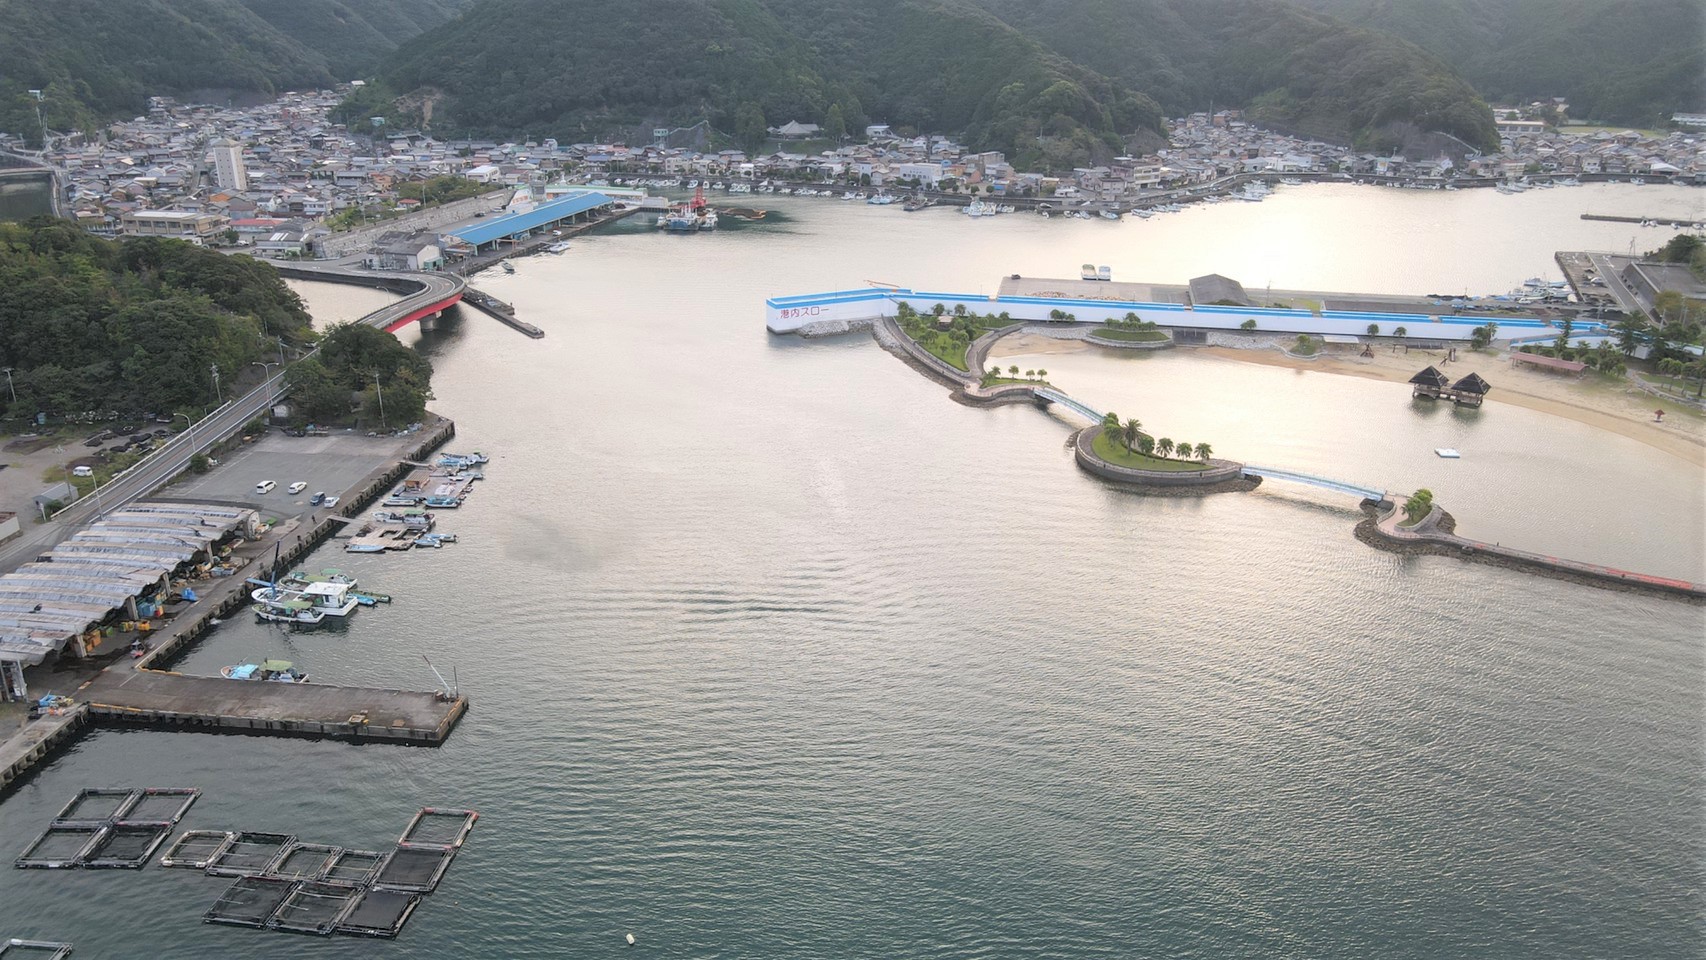 三重県大紀町 錦漁港 の海釣りガイド 釣れる魚 駐車場 トイレ 東海釣りwalker